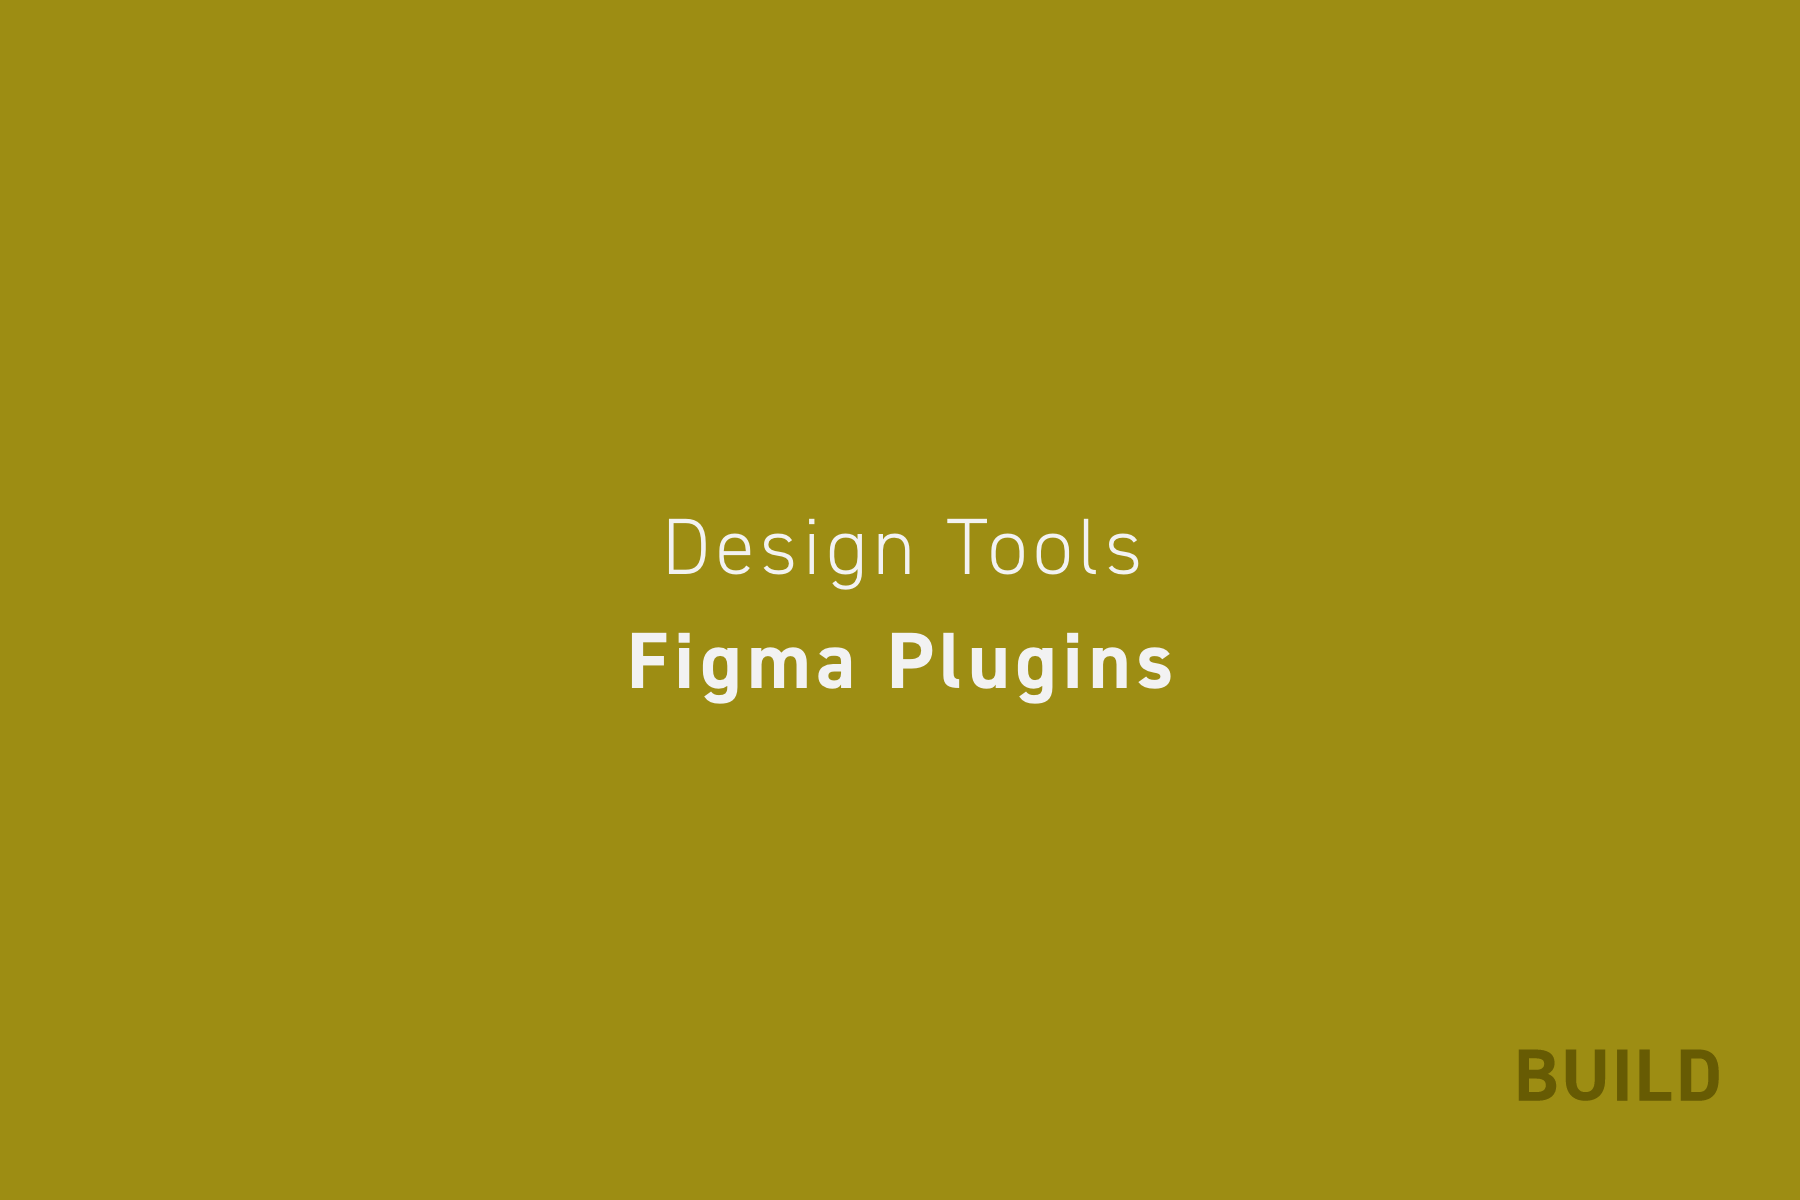 Figmaプラグイン16選。Webデザイナーが使い続けているプラグインを紹介